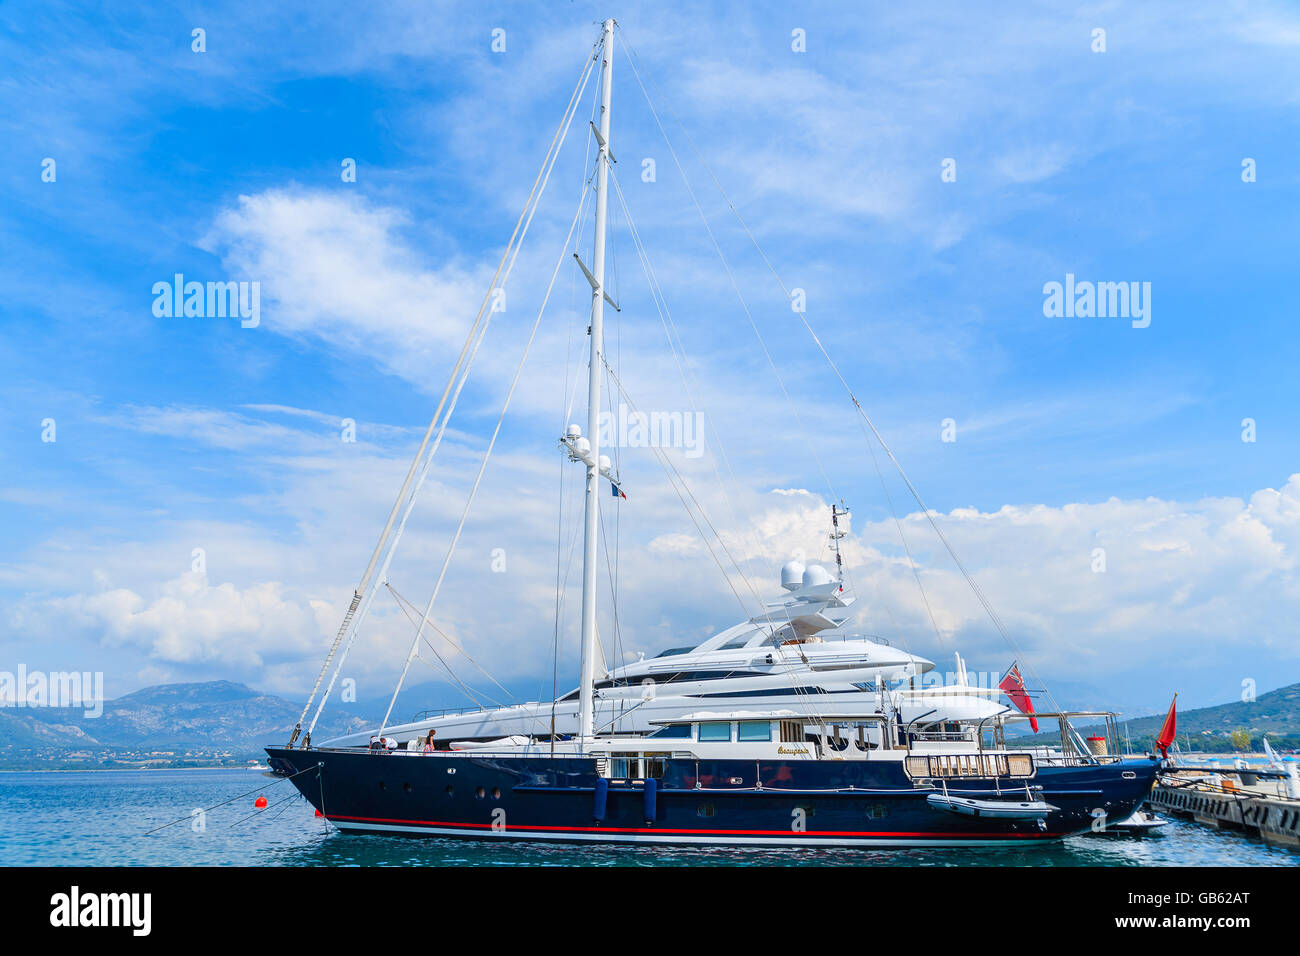 Hafen von CALVI, Korsika - 29. Juni 2015: Luxus Segelboot auf See gegen schönen Himmel mit weißen Wolken an sonnigen Sommertag. Stockfoto